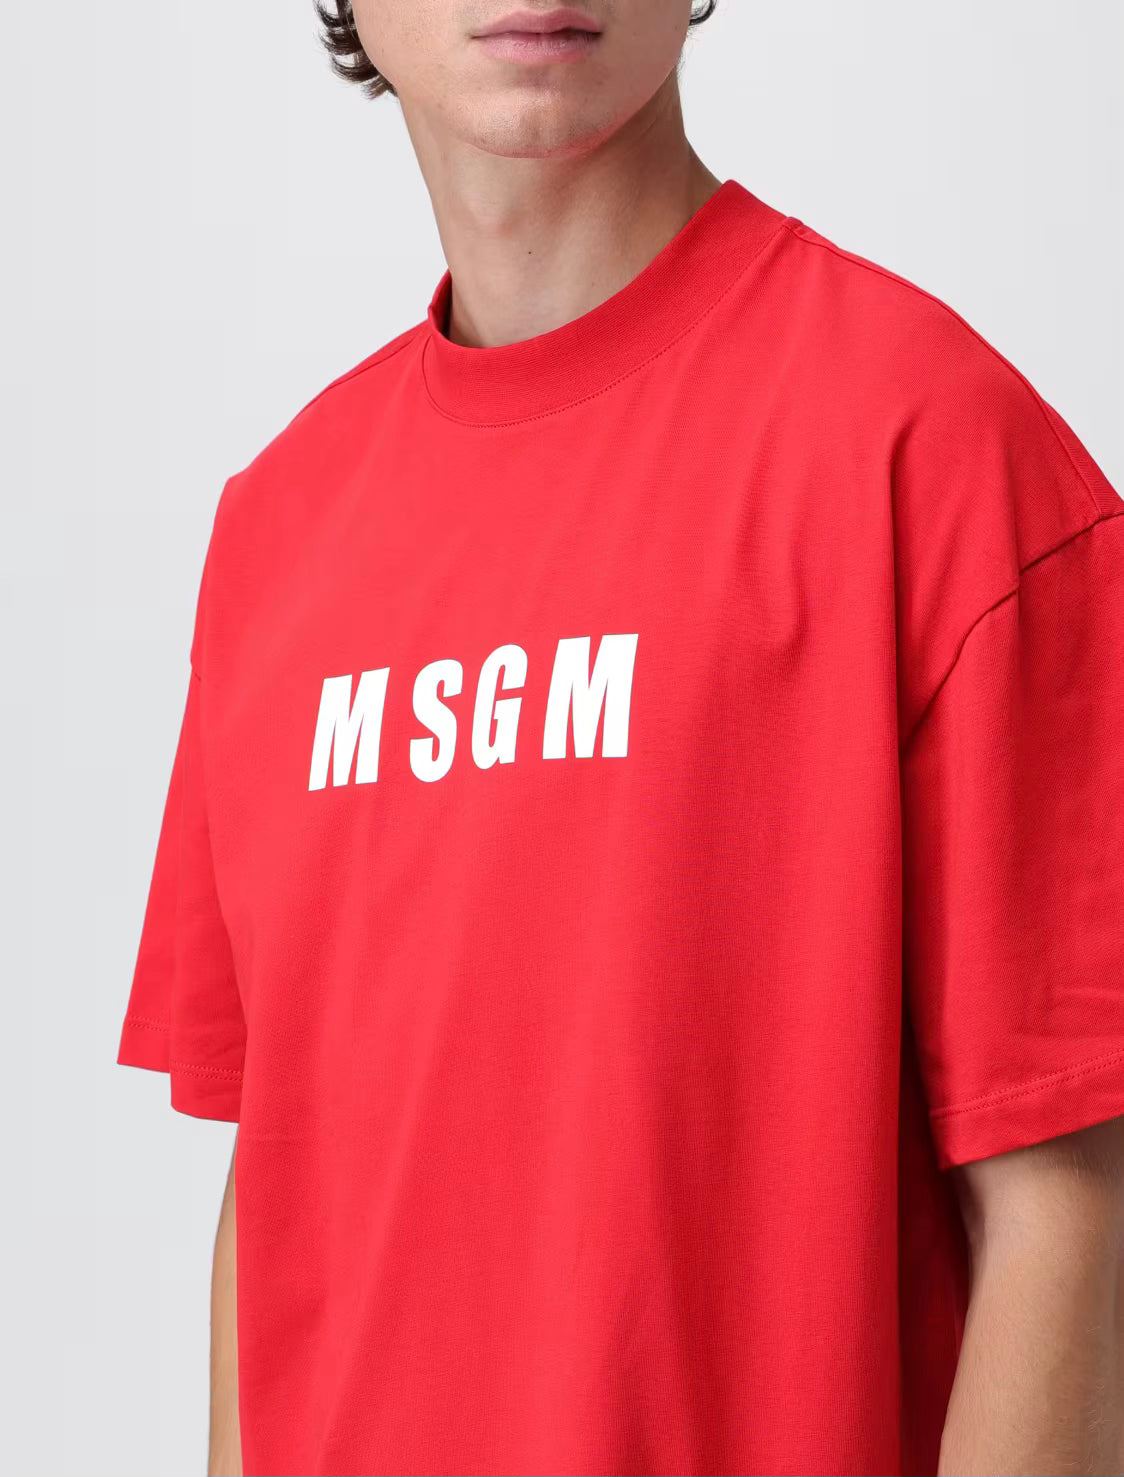 MSGM Rood T-shirt met MSGM logo